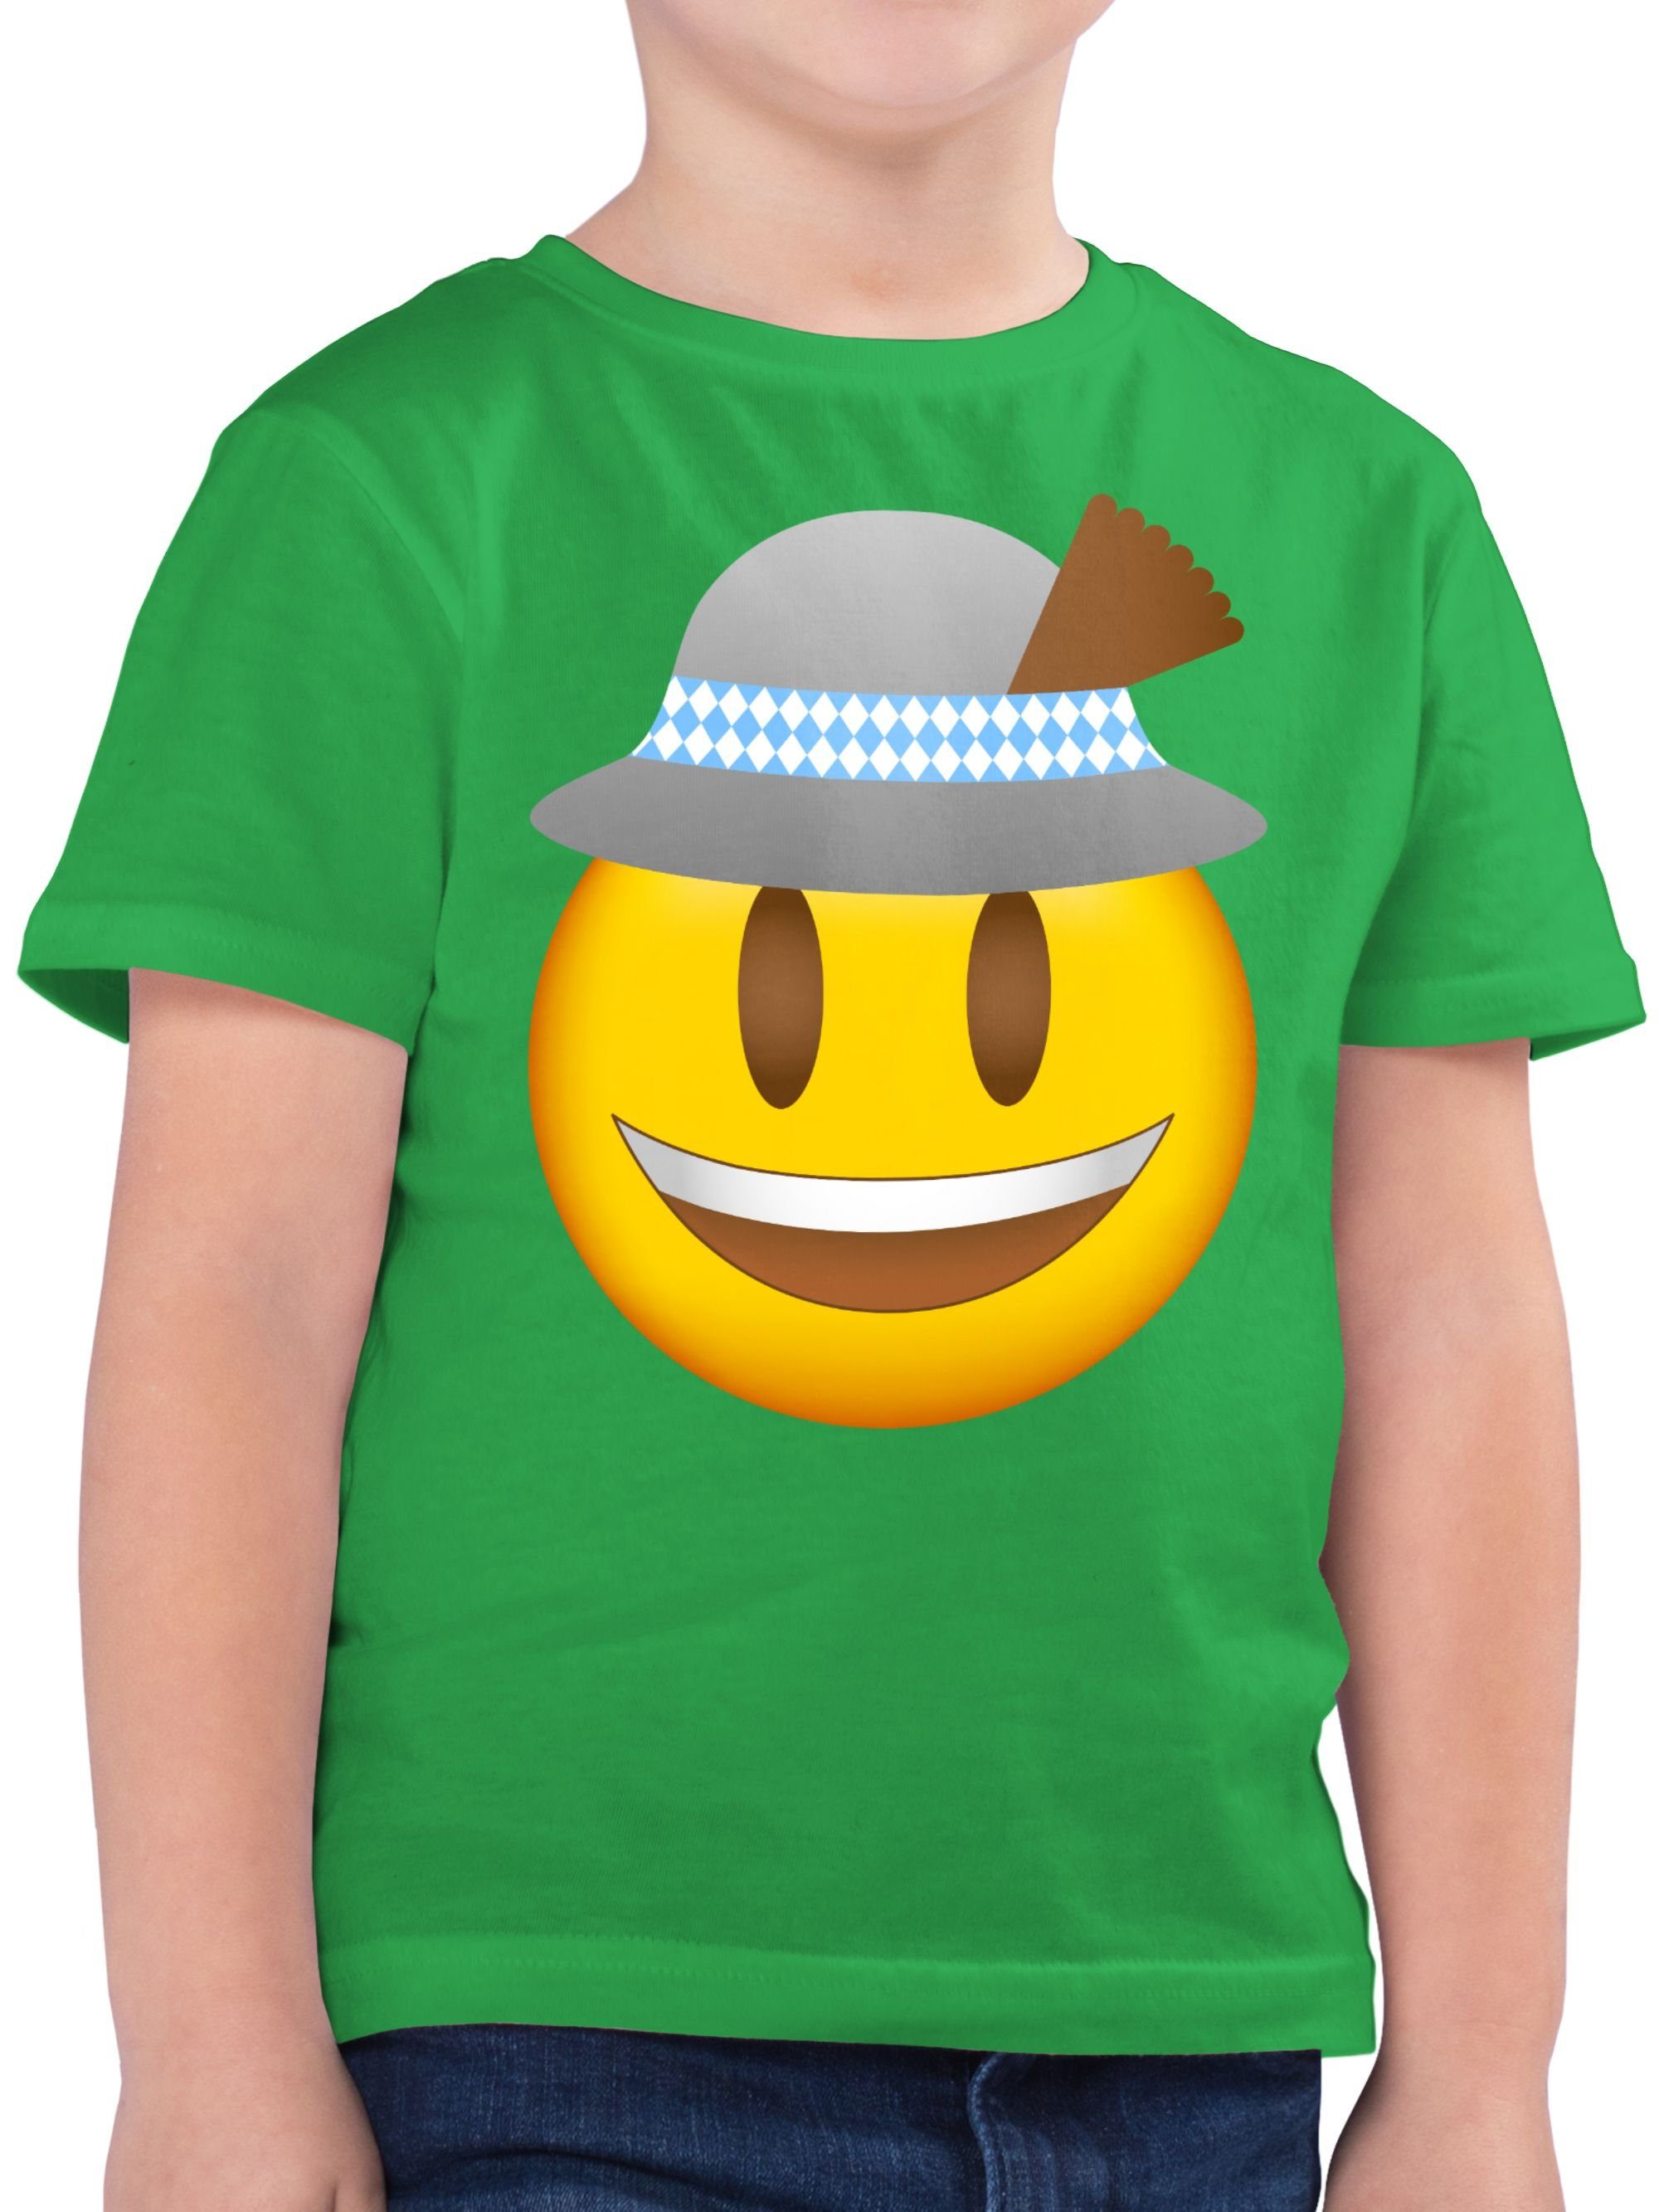 Shirtracer T-Shirt Oktoberfest Emoticon mit Hut Mode für Oktoberfest Kinder Outfit 2 Grün